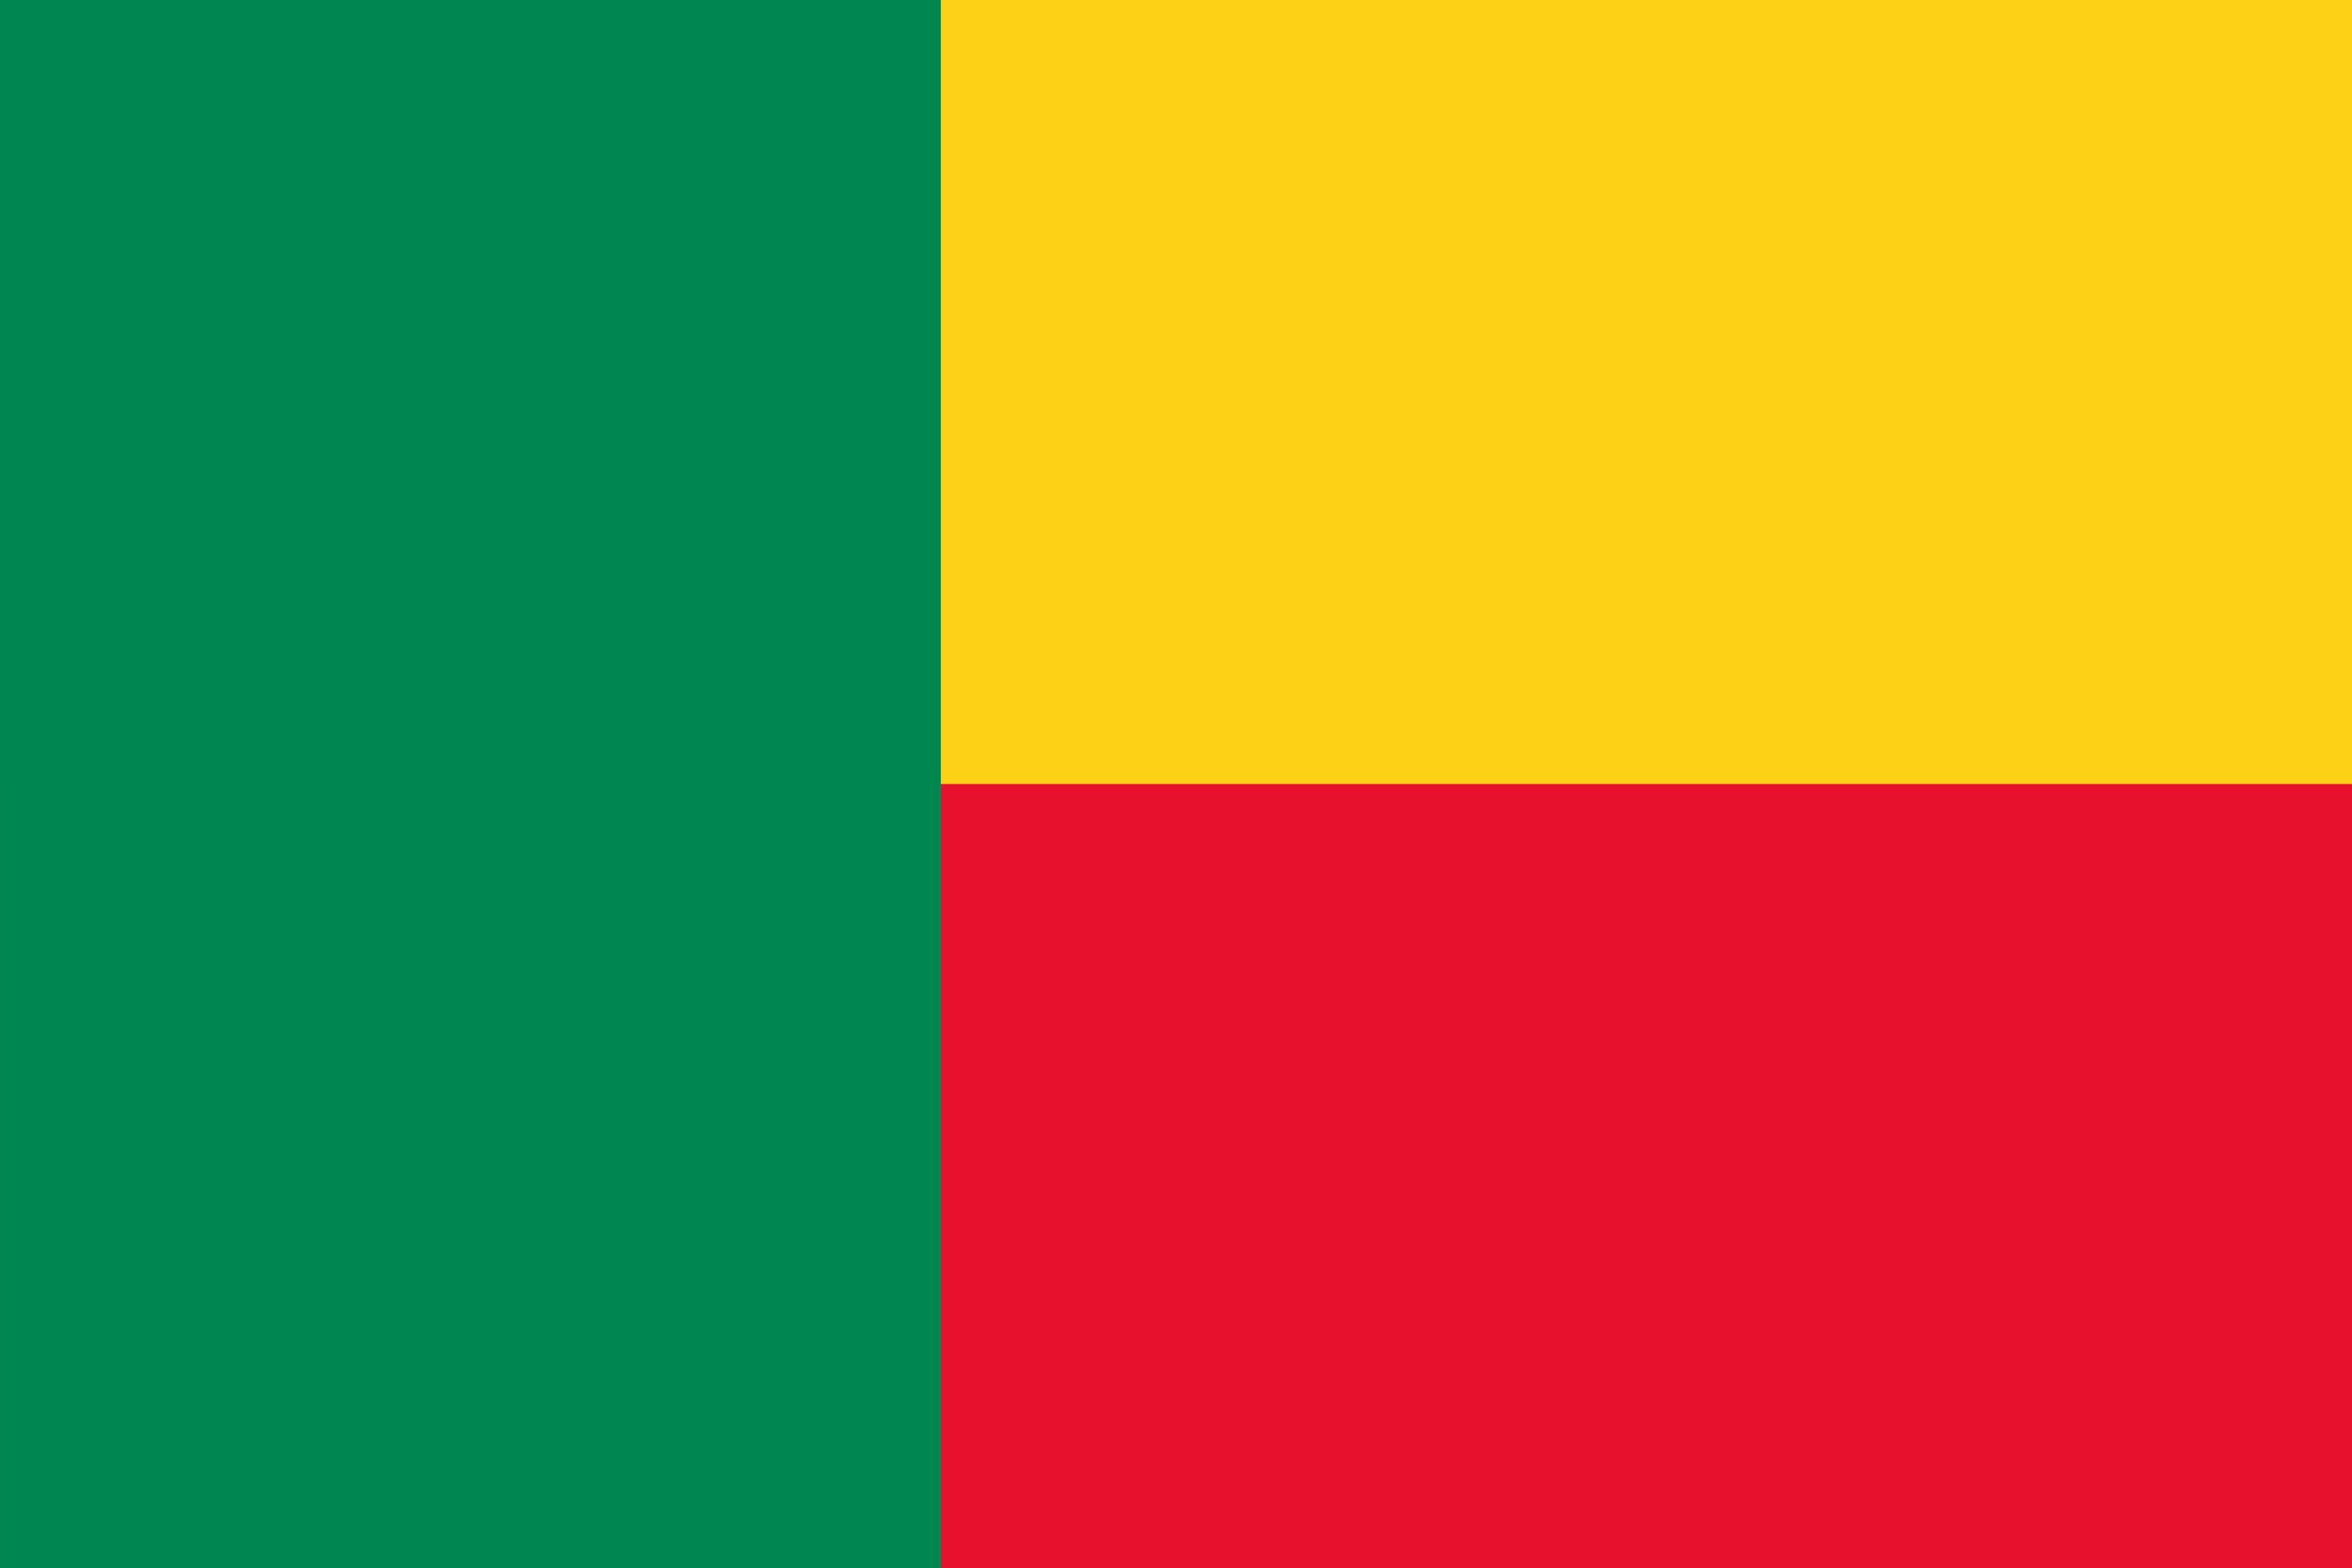 Benin national anthem song